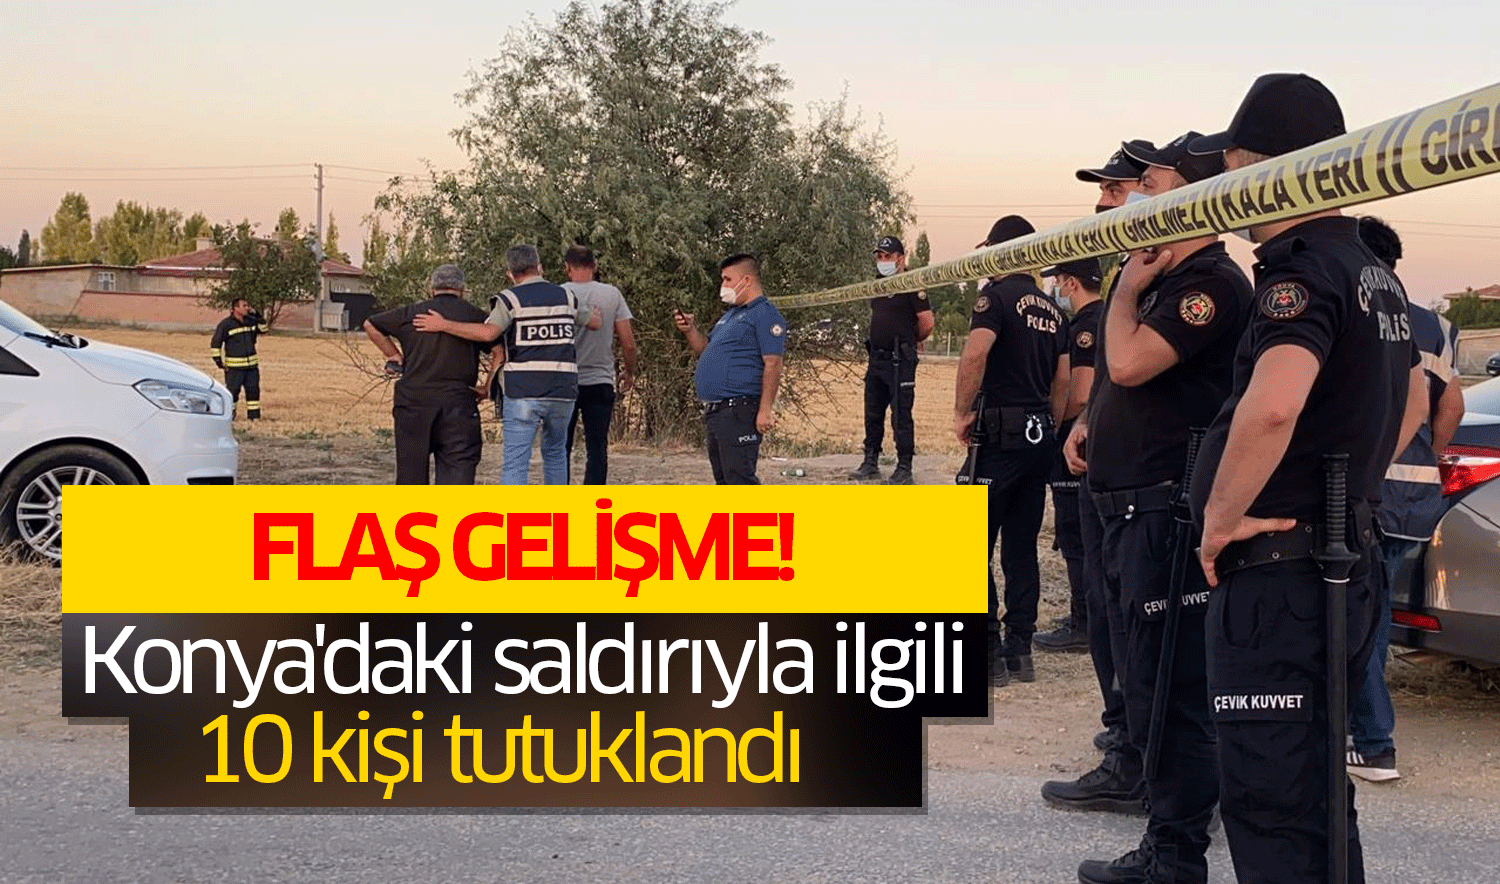 Konya'da 7 kişinin öldürüldüğü saldırıya ilişkin yeni gelişme